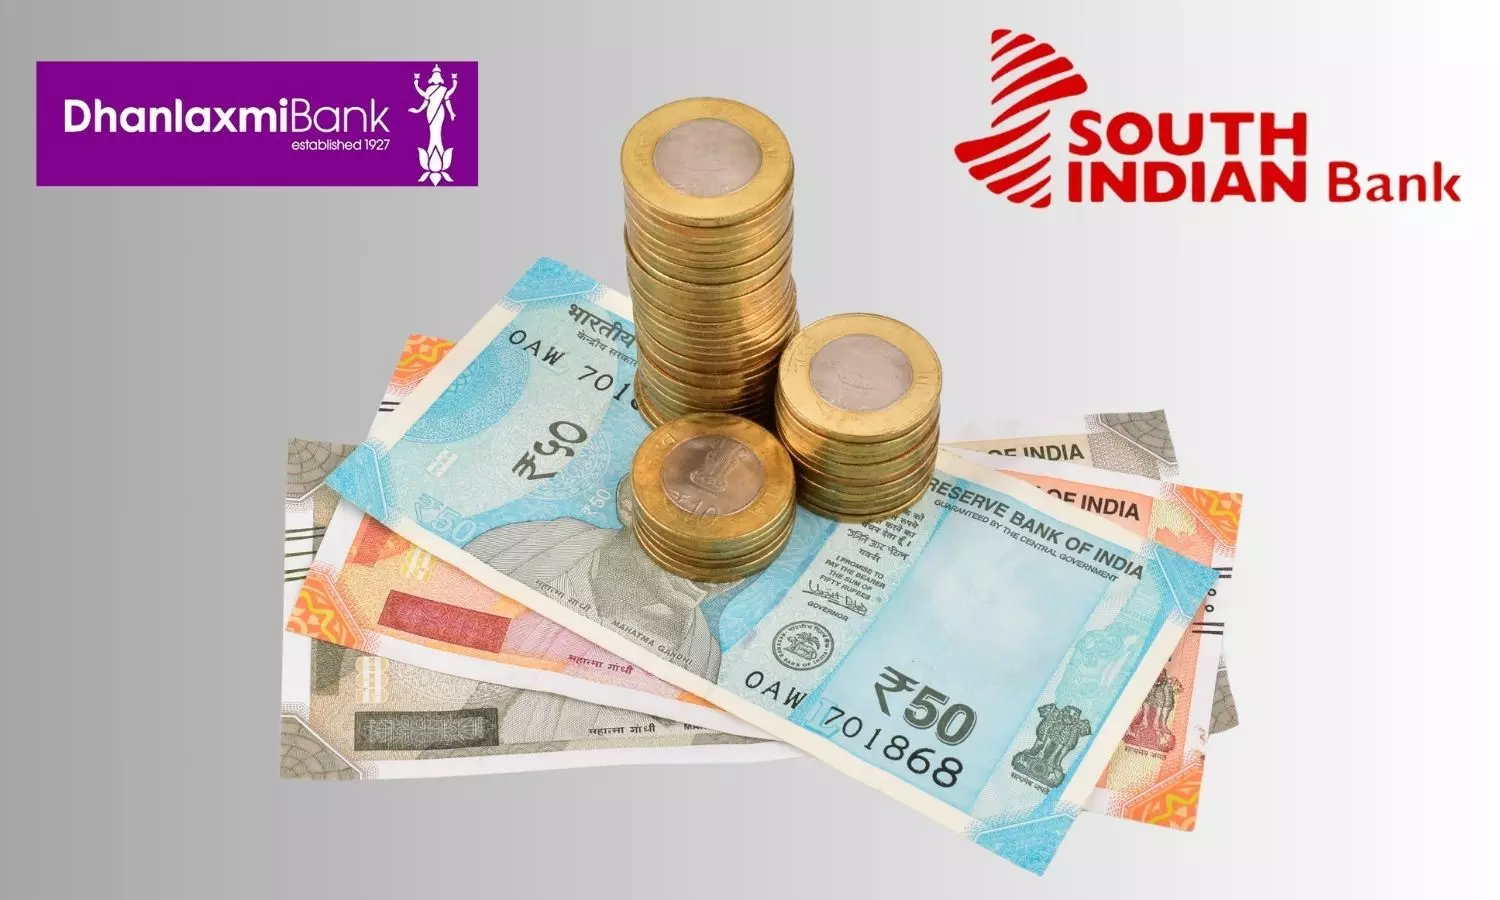 South Indian Bank, Dhanlaxmi Bank logos and Indian Rupees